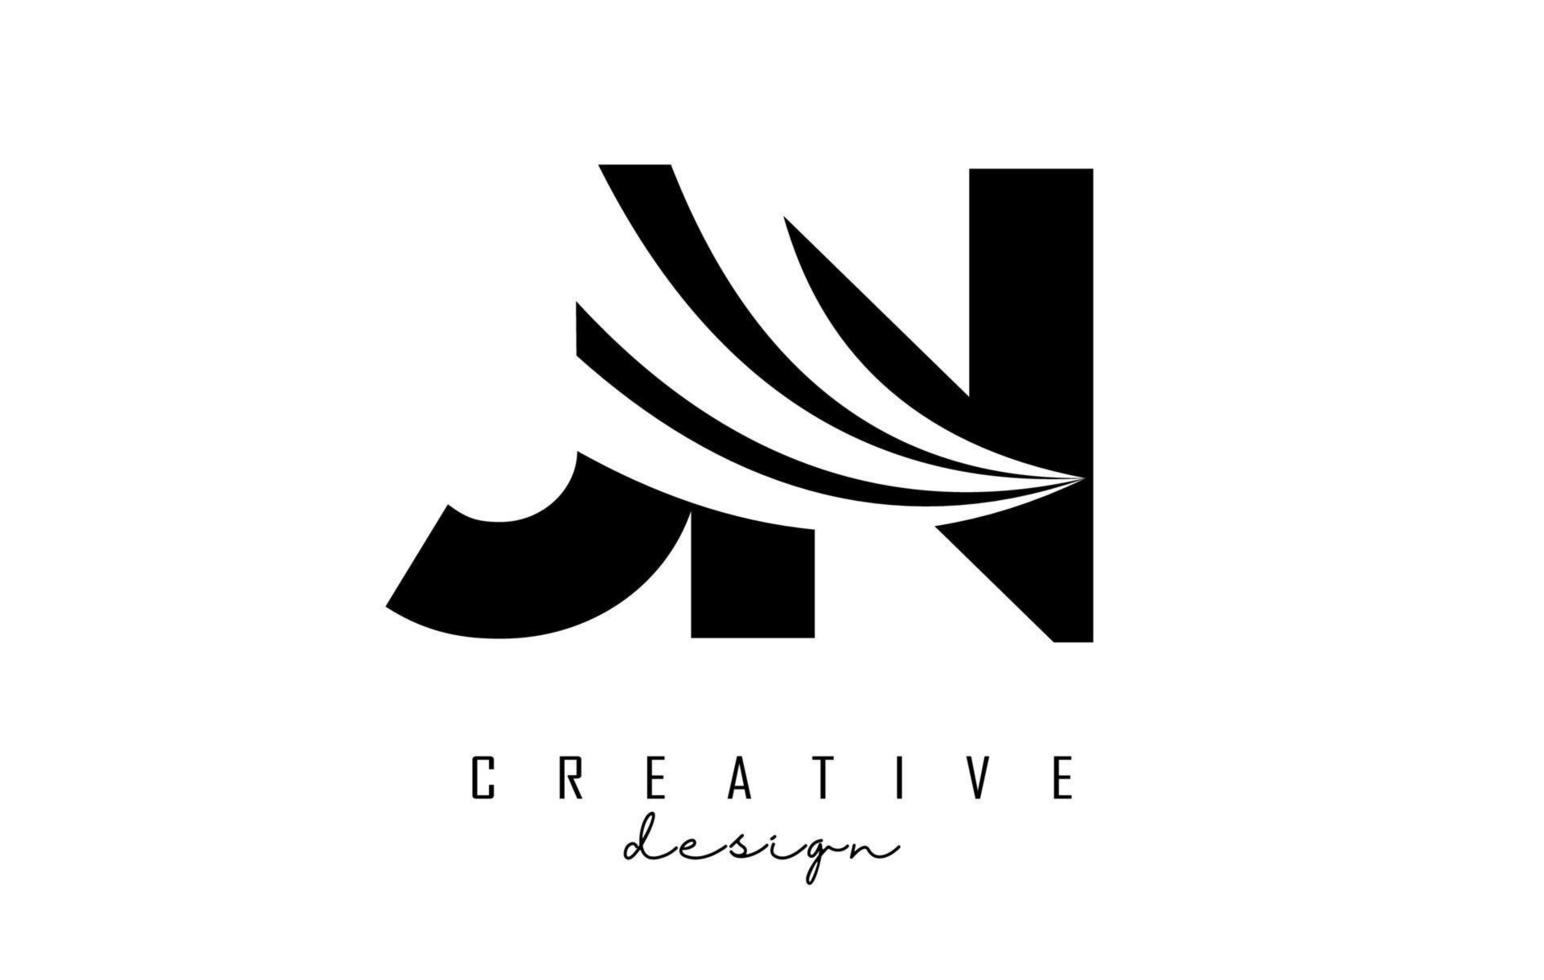 lettere nere creative logo jn jn con linee guida e concept design stradale. lettere con disegno geometrico. vettore